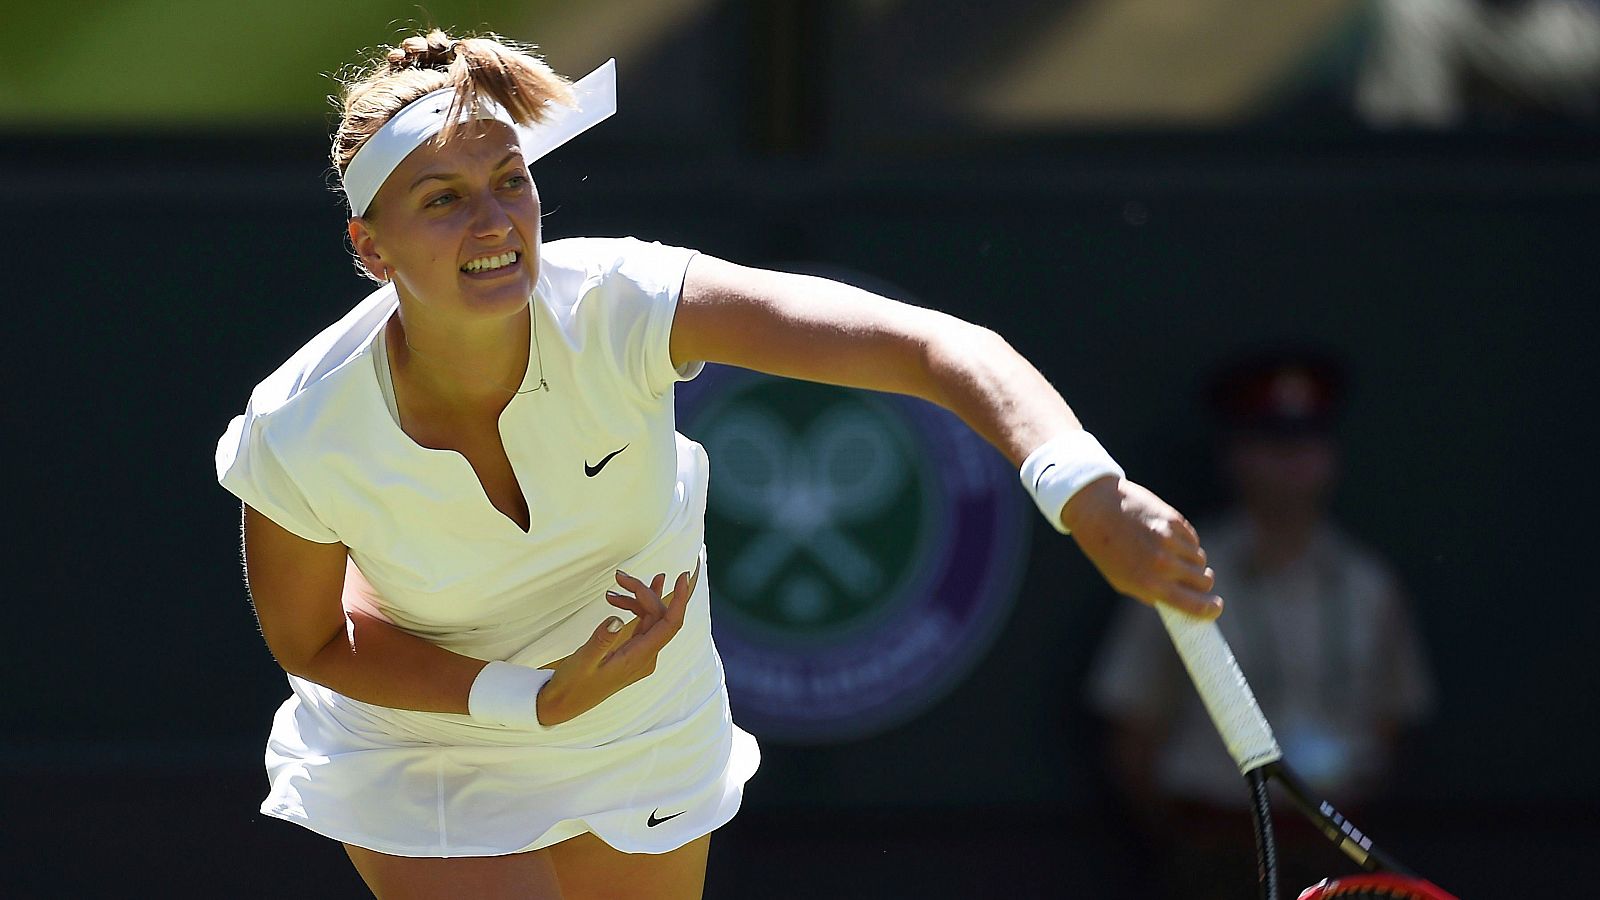 - Fotografía de archivo fechada el 30 de junio de 2015 que muestra a la tenista checa Petra Kvitova durante un partido en Wimbledon en Londres